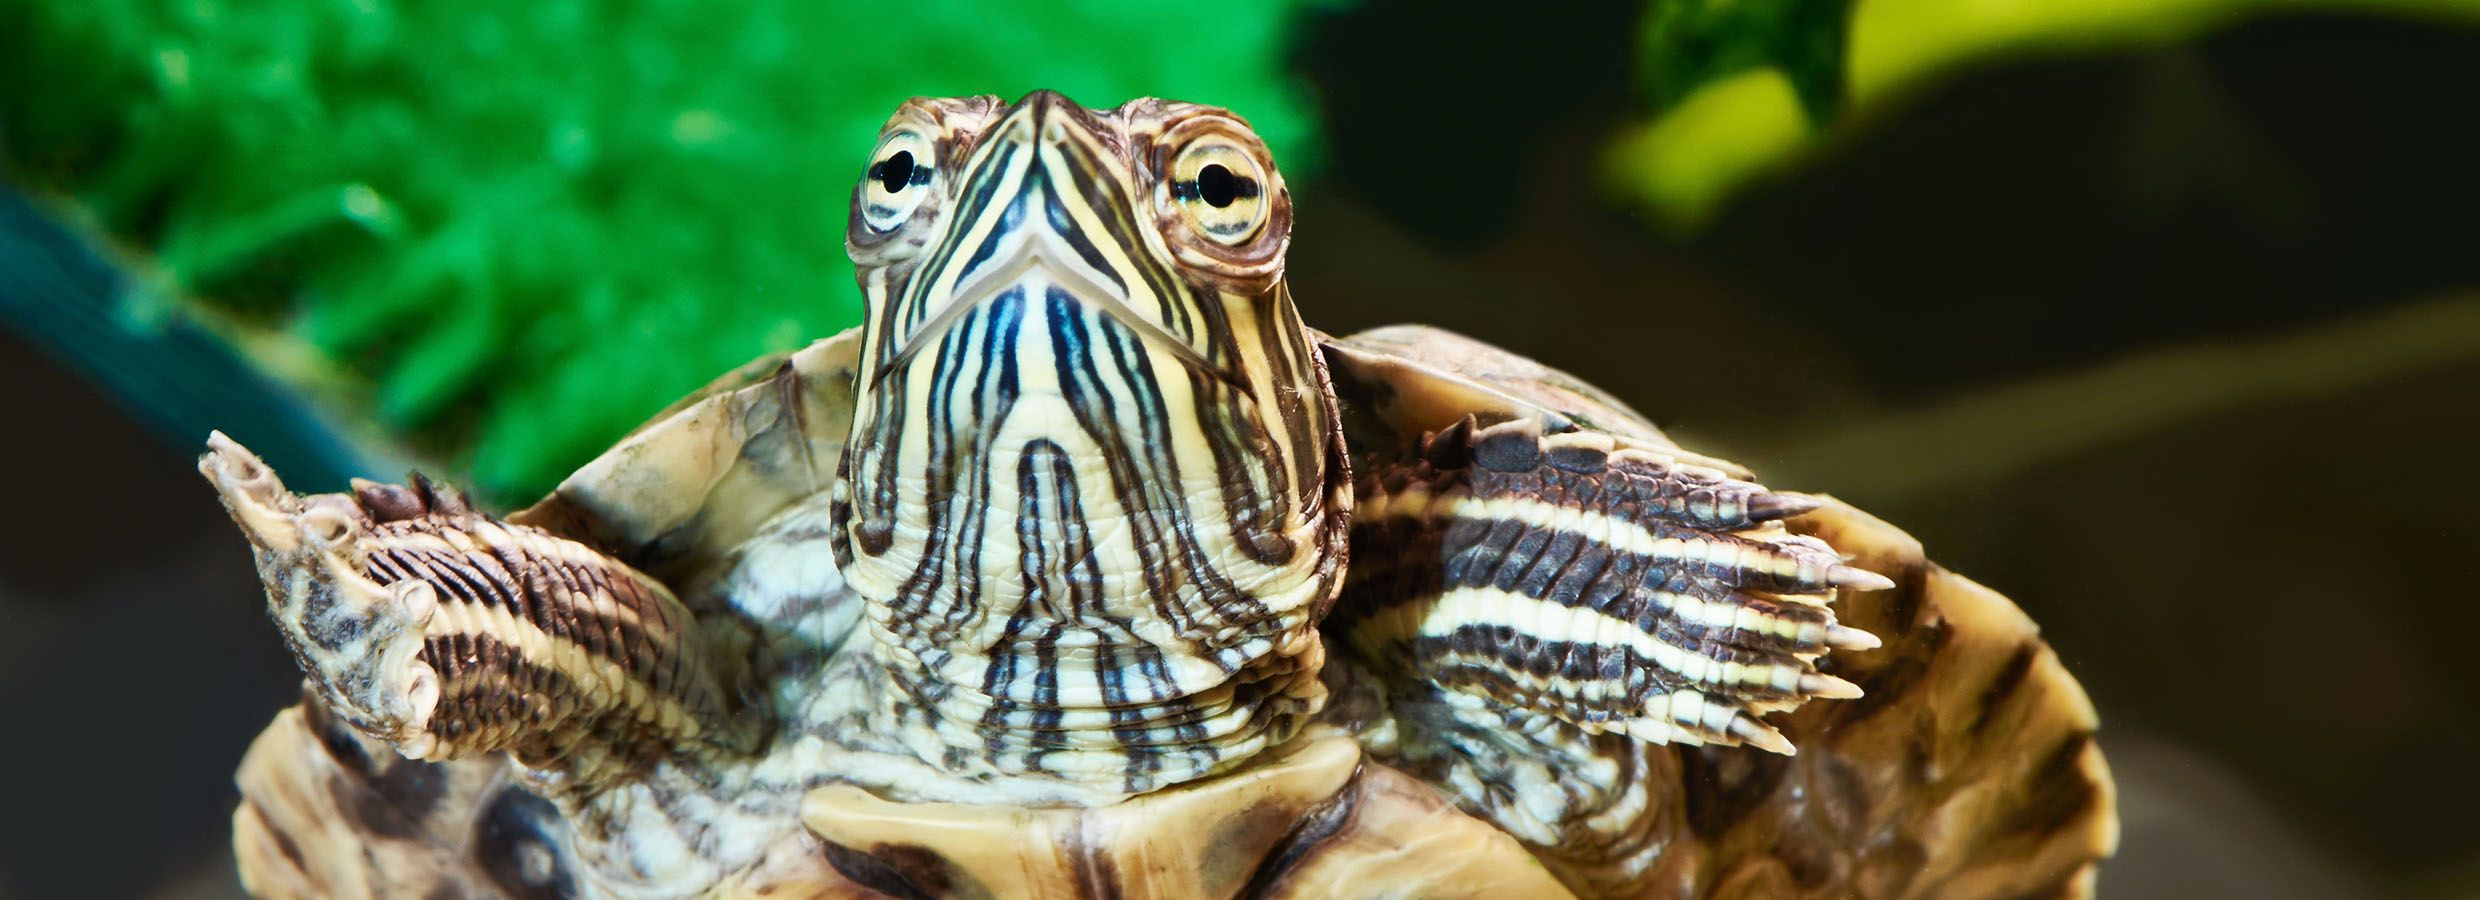 pet turtles tanks